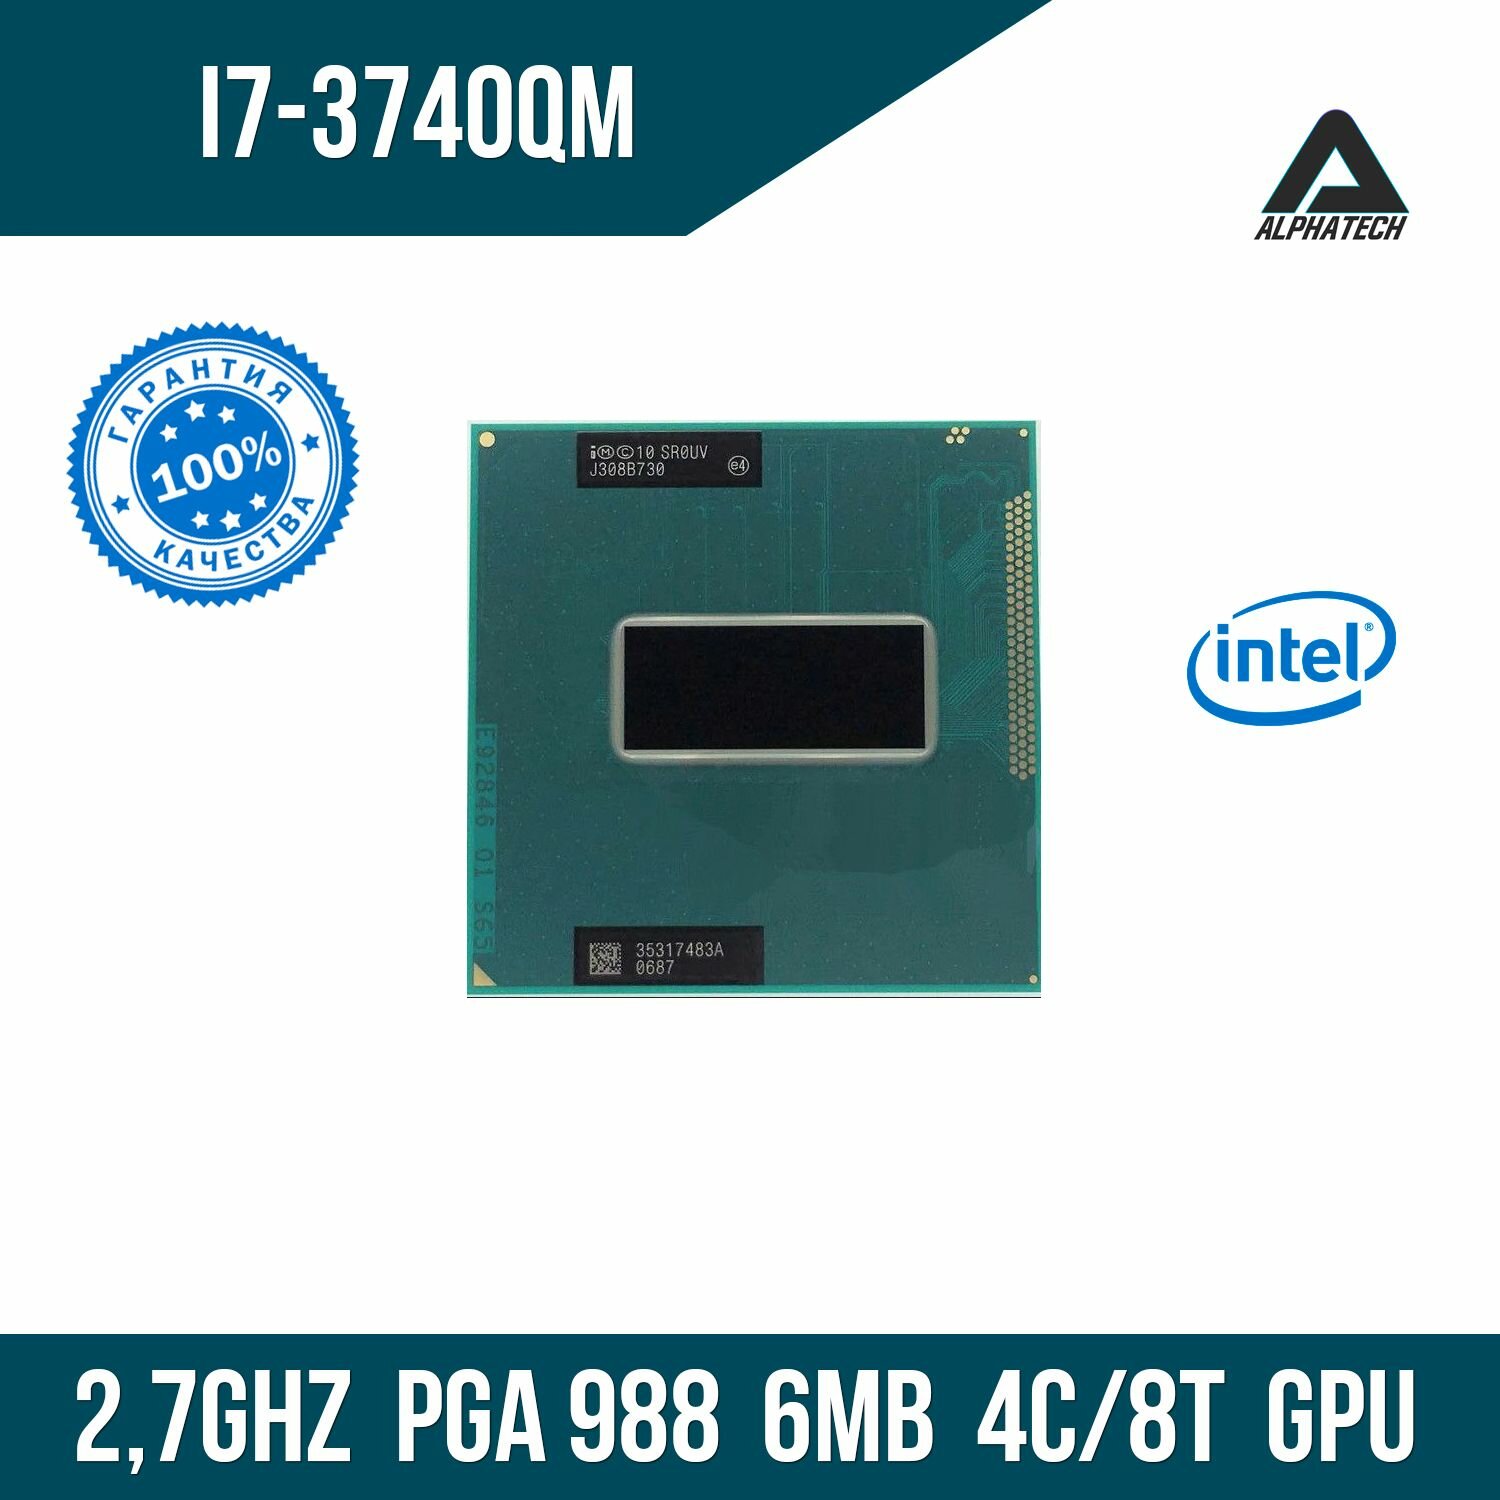 Процессор для ноутбука Intel Core i7 3740QM ( 2,7 ГГц, PGA 988, 6 Мб, 4 ядра )